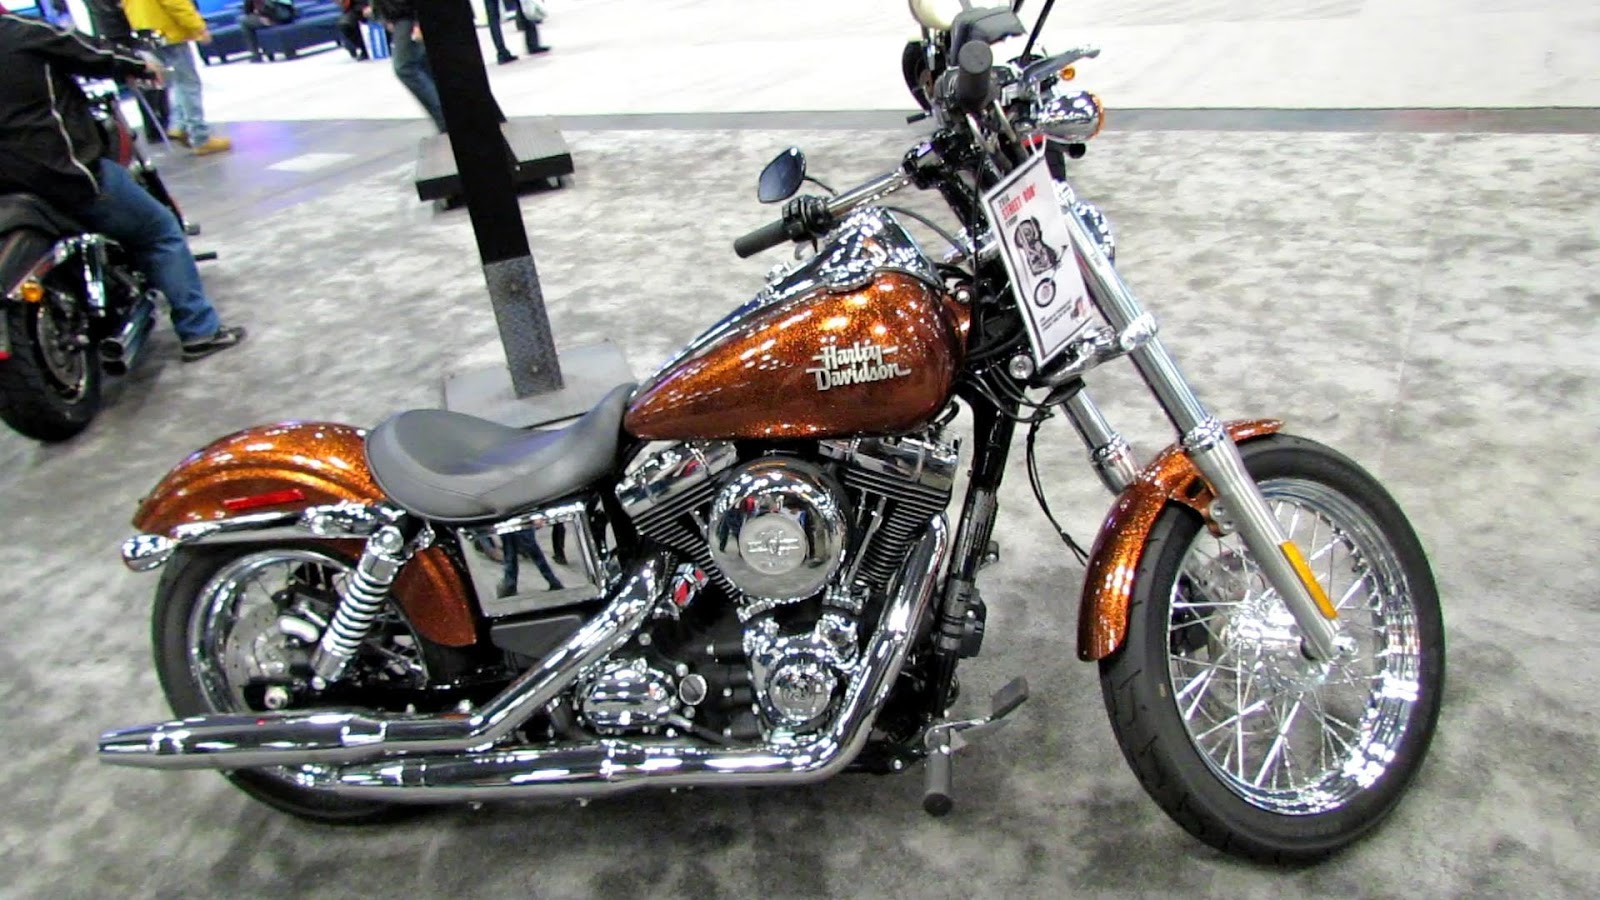 Daftar Harga Motor Harley Davidson Termurah Lengkap Dengan